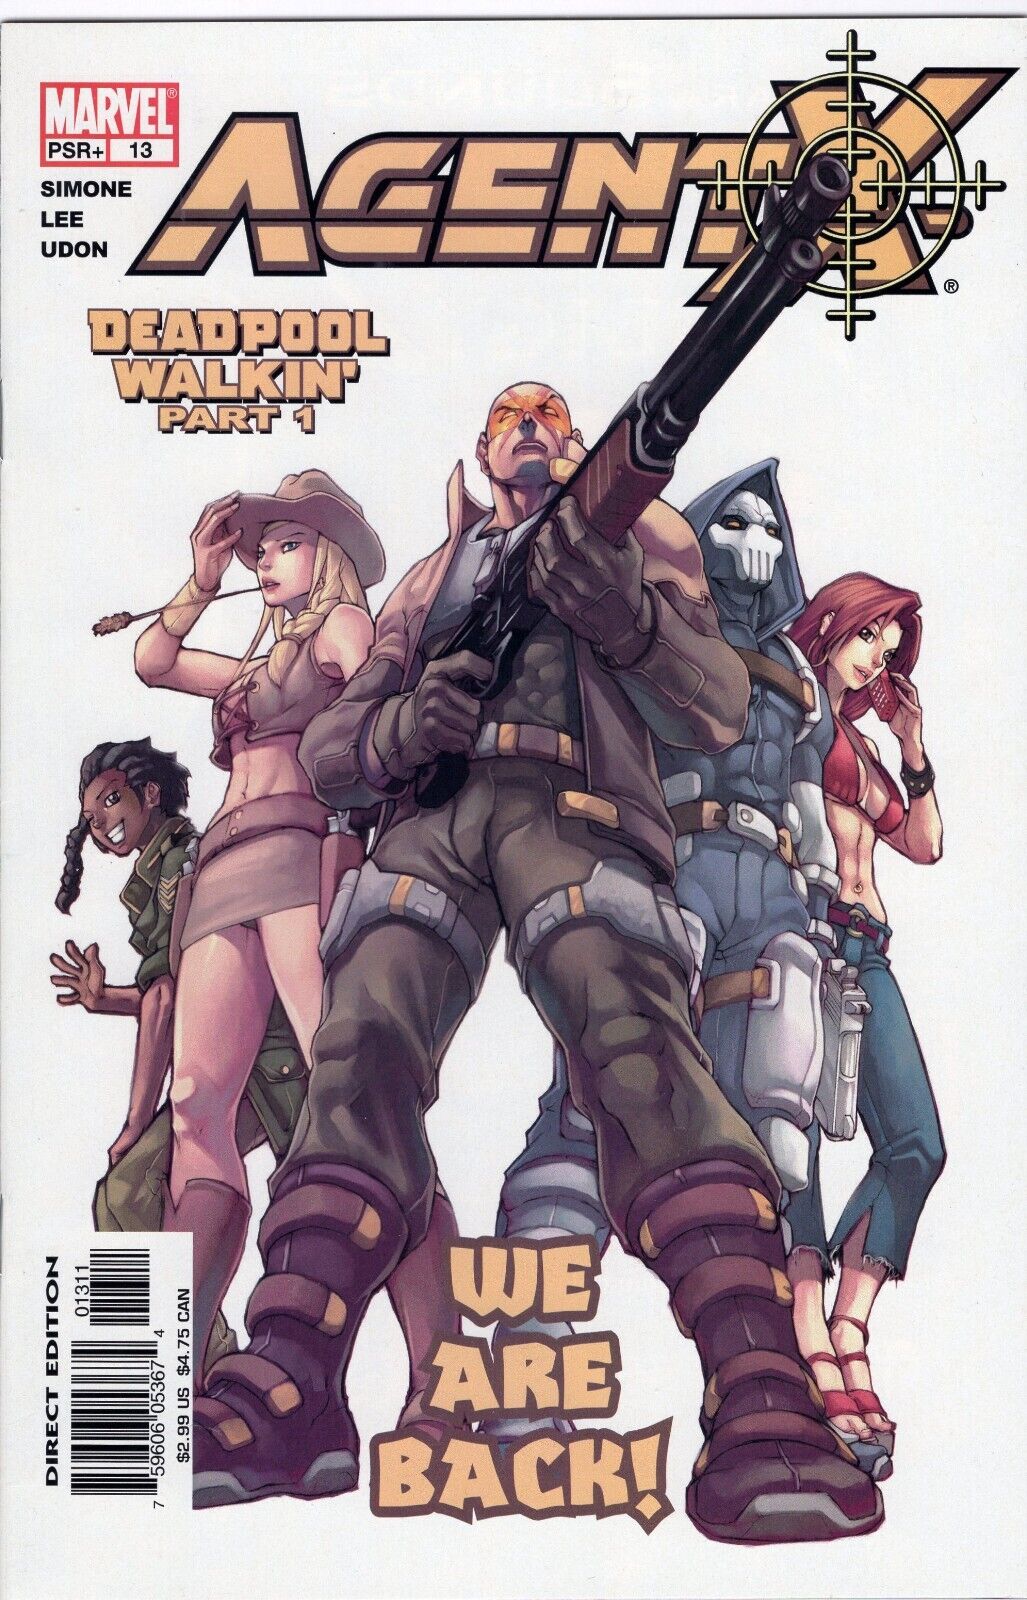 DEADPOOL - Agent X #13,14,15 Deadpool Walkin' Parts 1-3 (Marvel Comics, 2002)